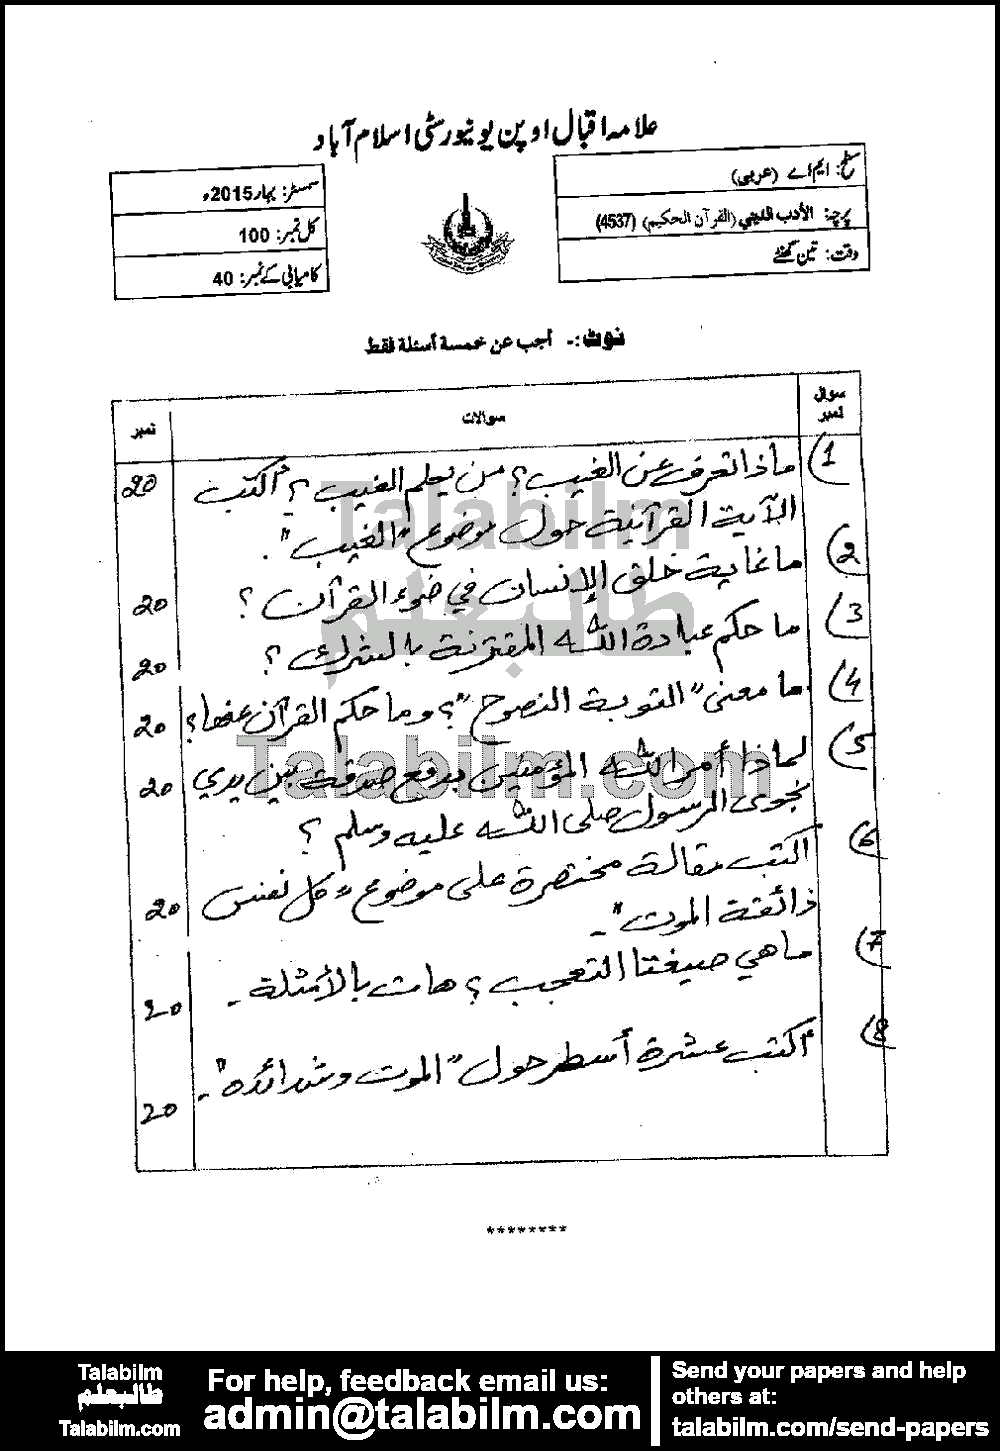 Religious Literature (Quran) 4537 past paper for Spring 2015